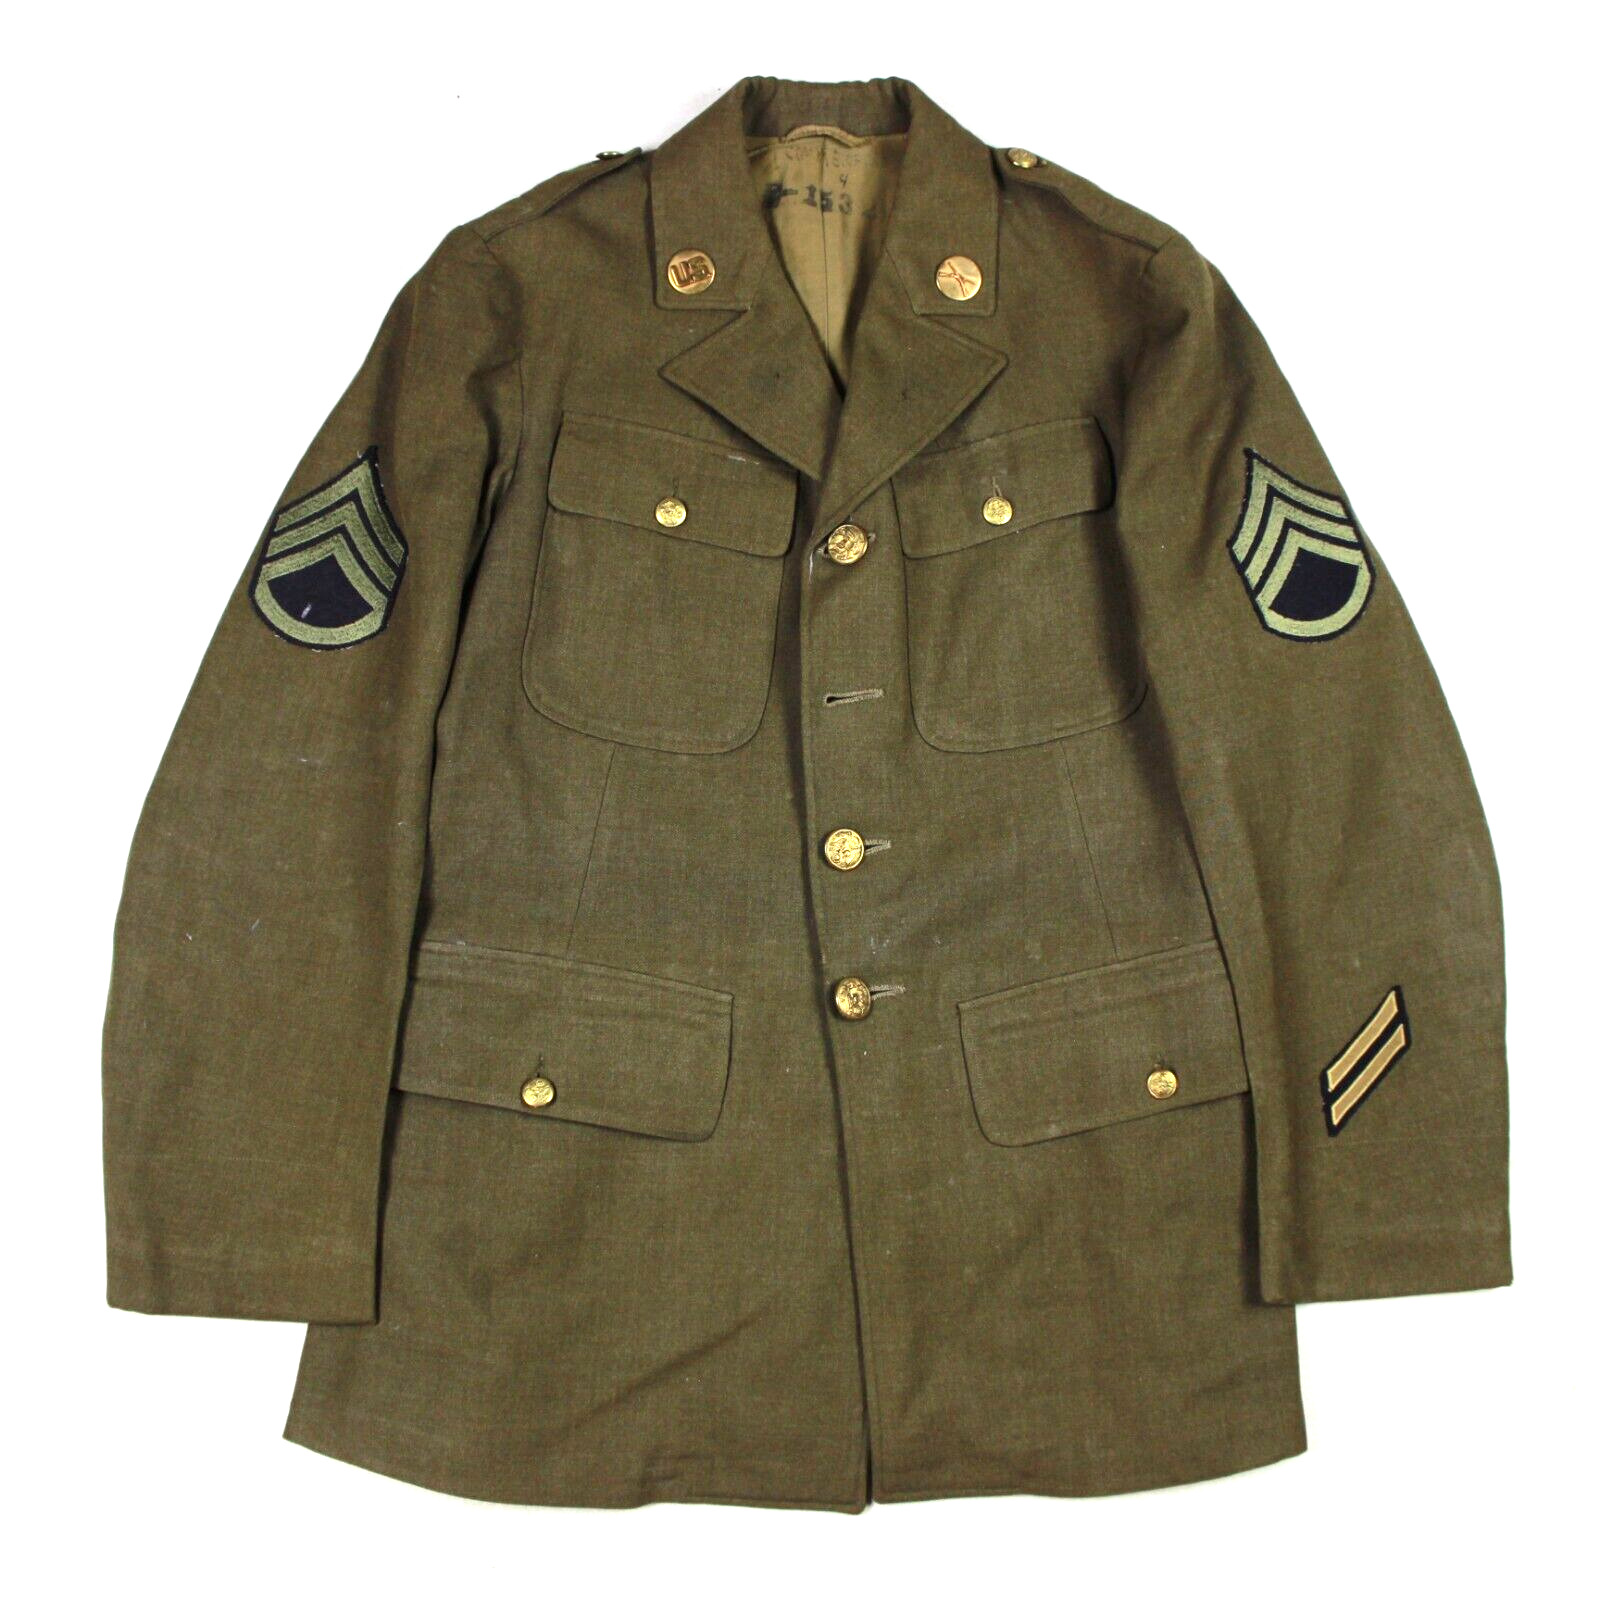 WW2 US ARMY ENLISTED EM OD WOOL DRESS UNIFORM 4 POCKET JACKET IDENTIFIED